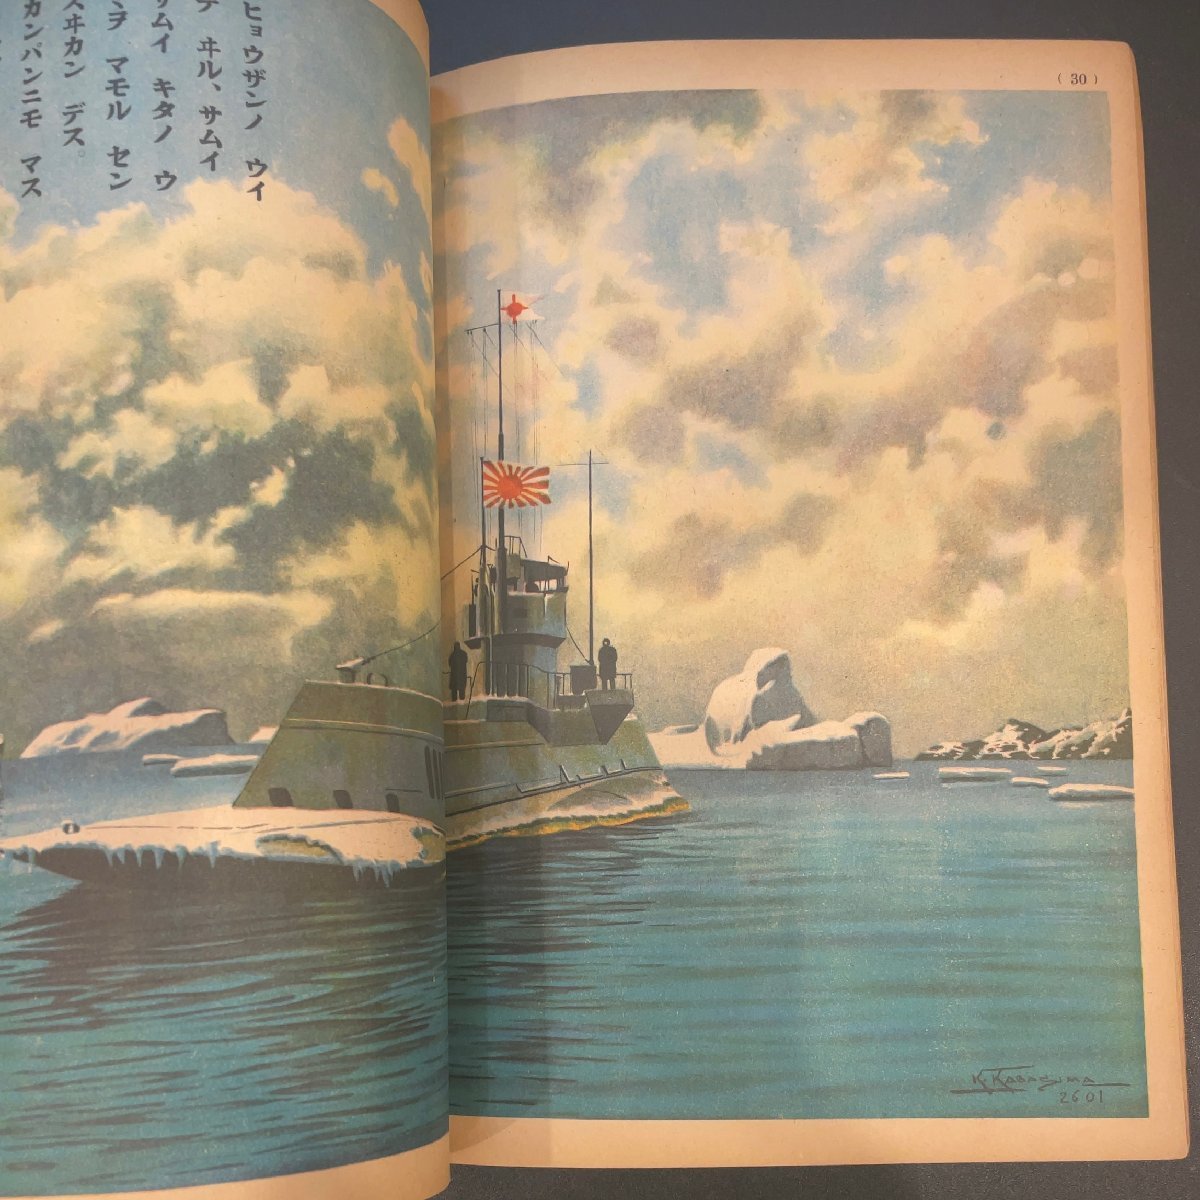 新作商品 センスイカン 講談社の絵本 潜水艦 村上松次郎 昭和年